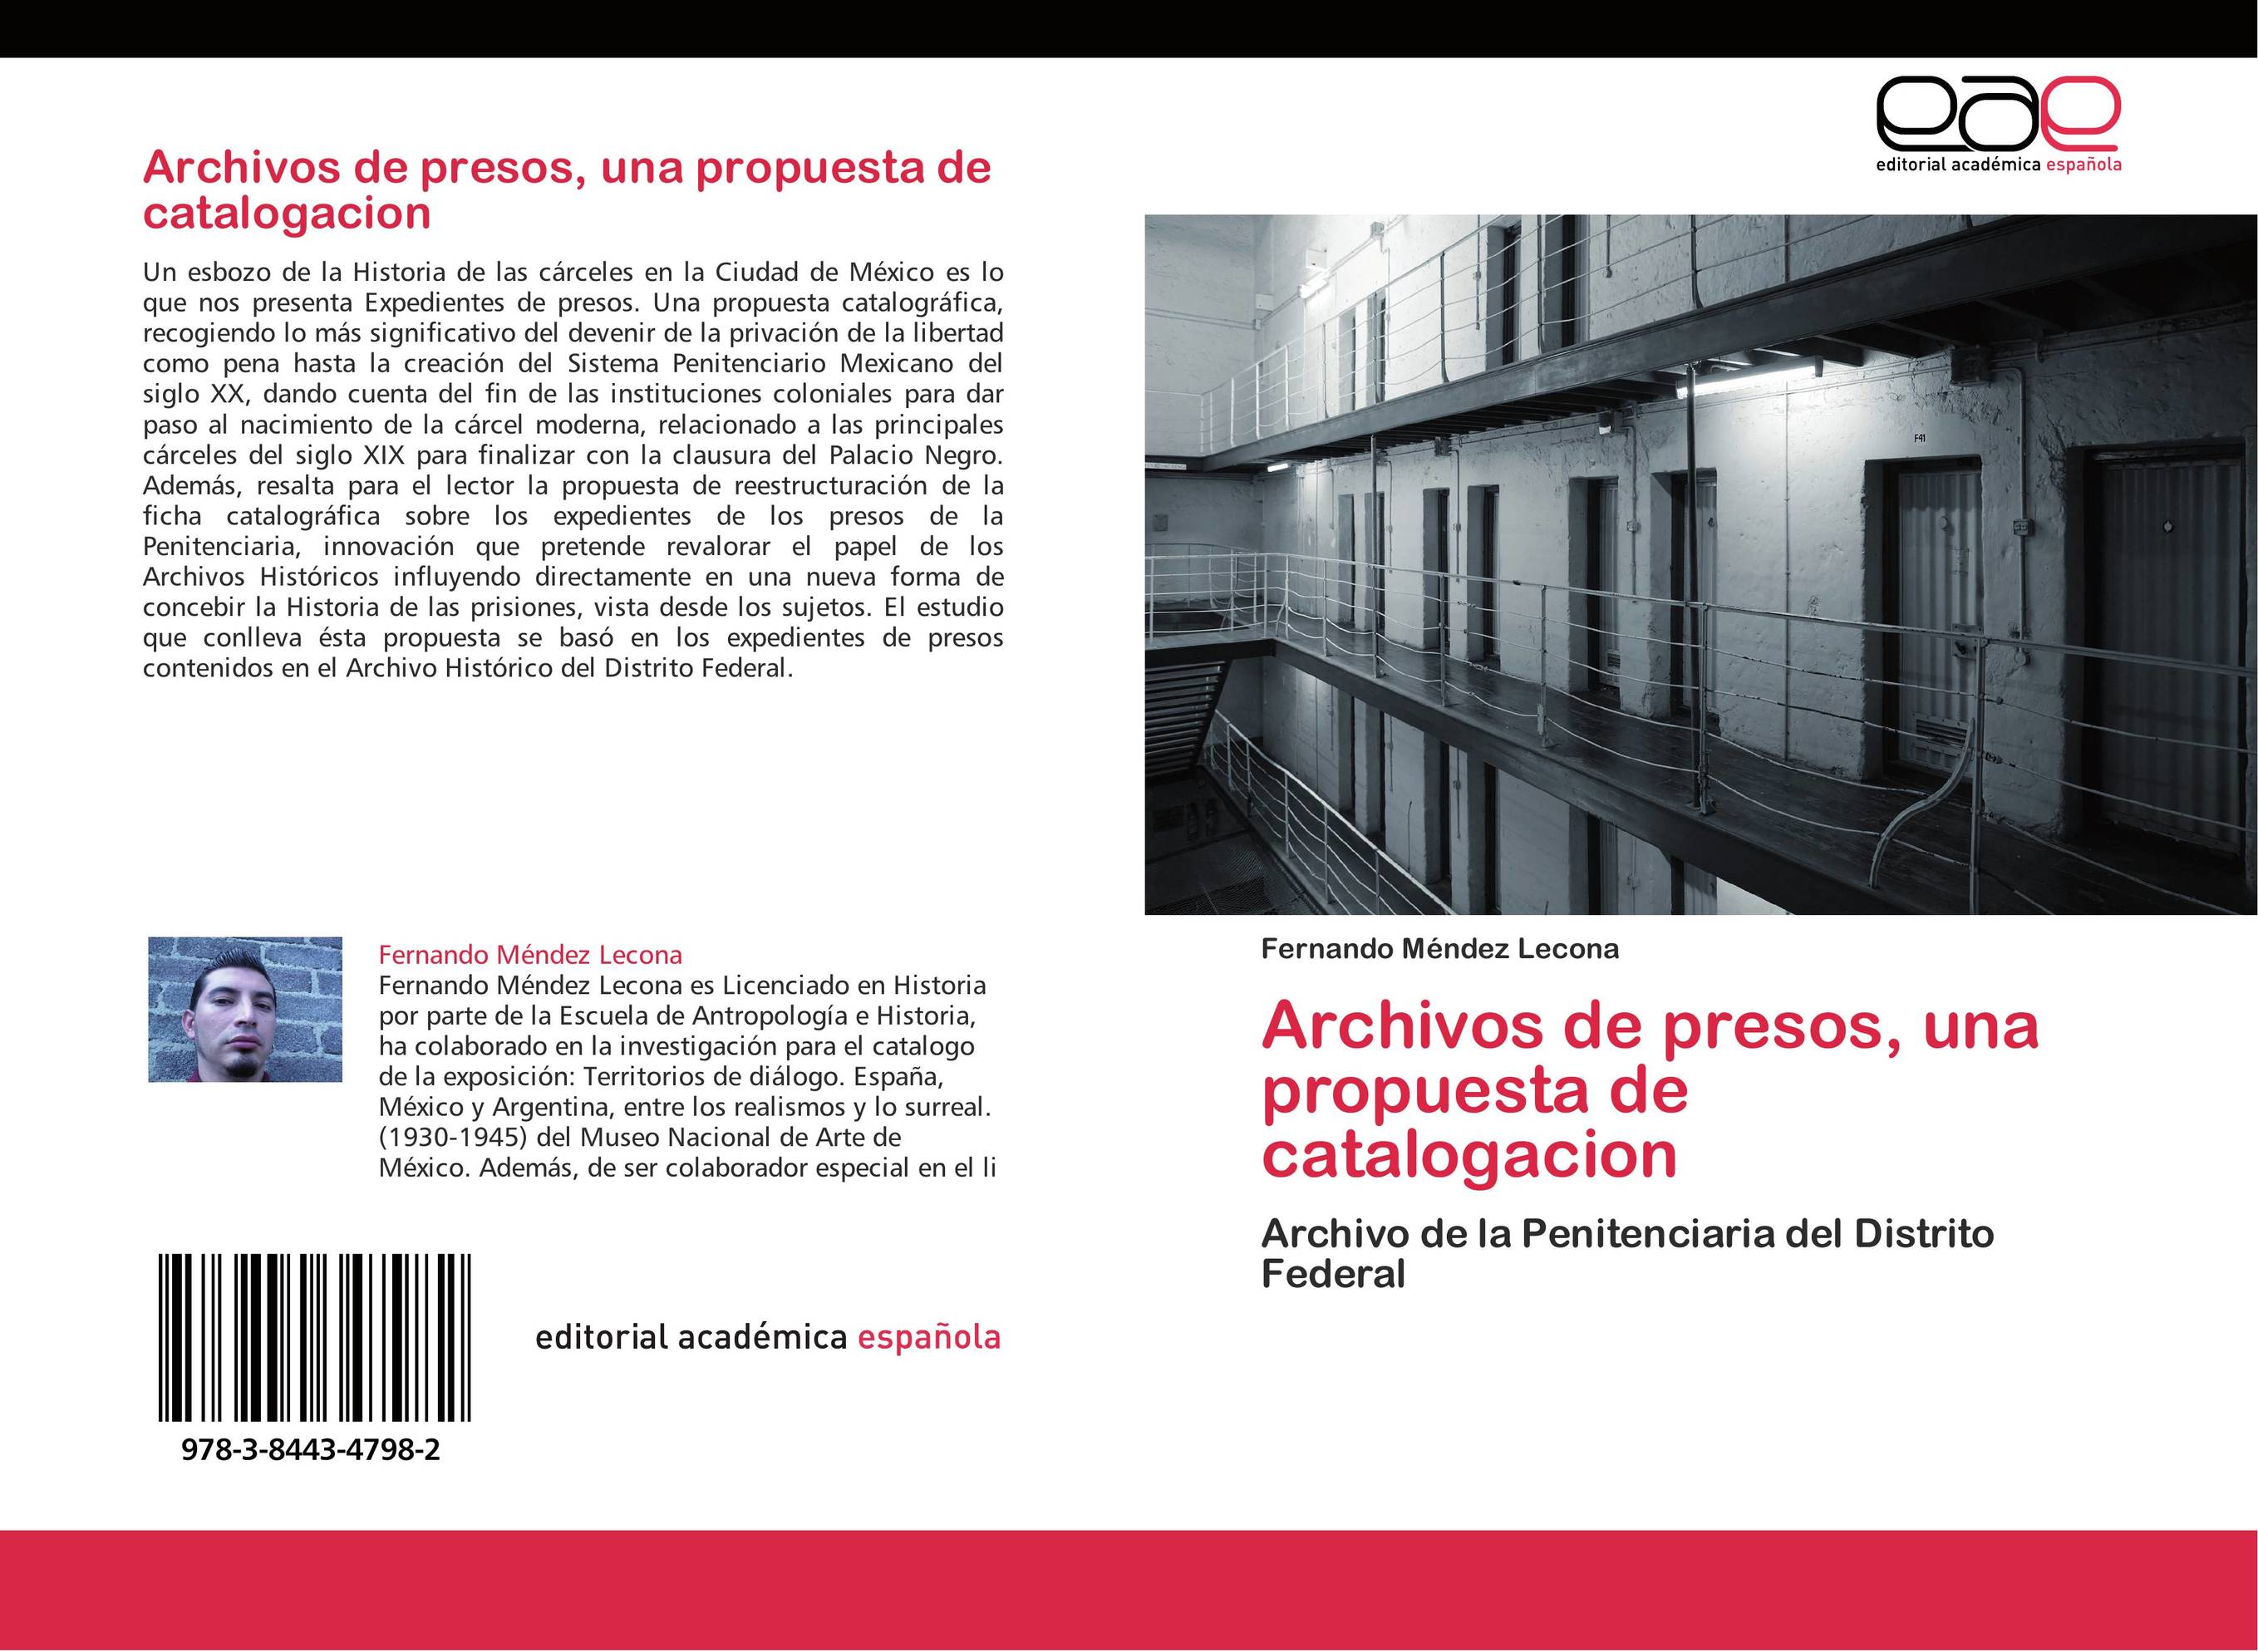 Archivos de presos, una propuesta de catalogacion